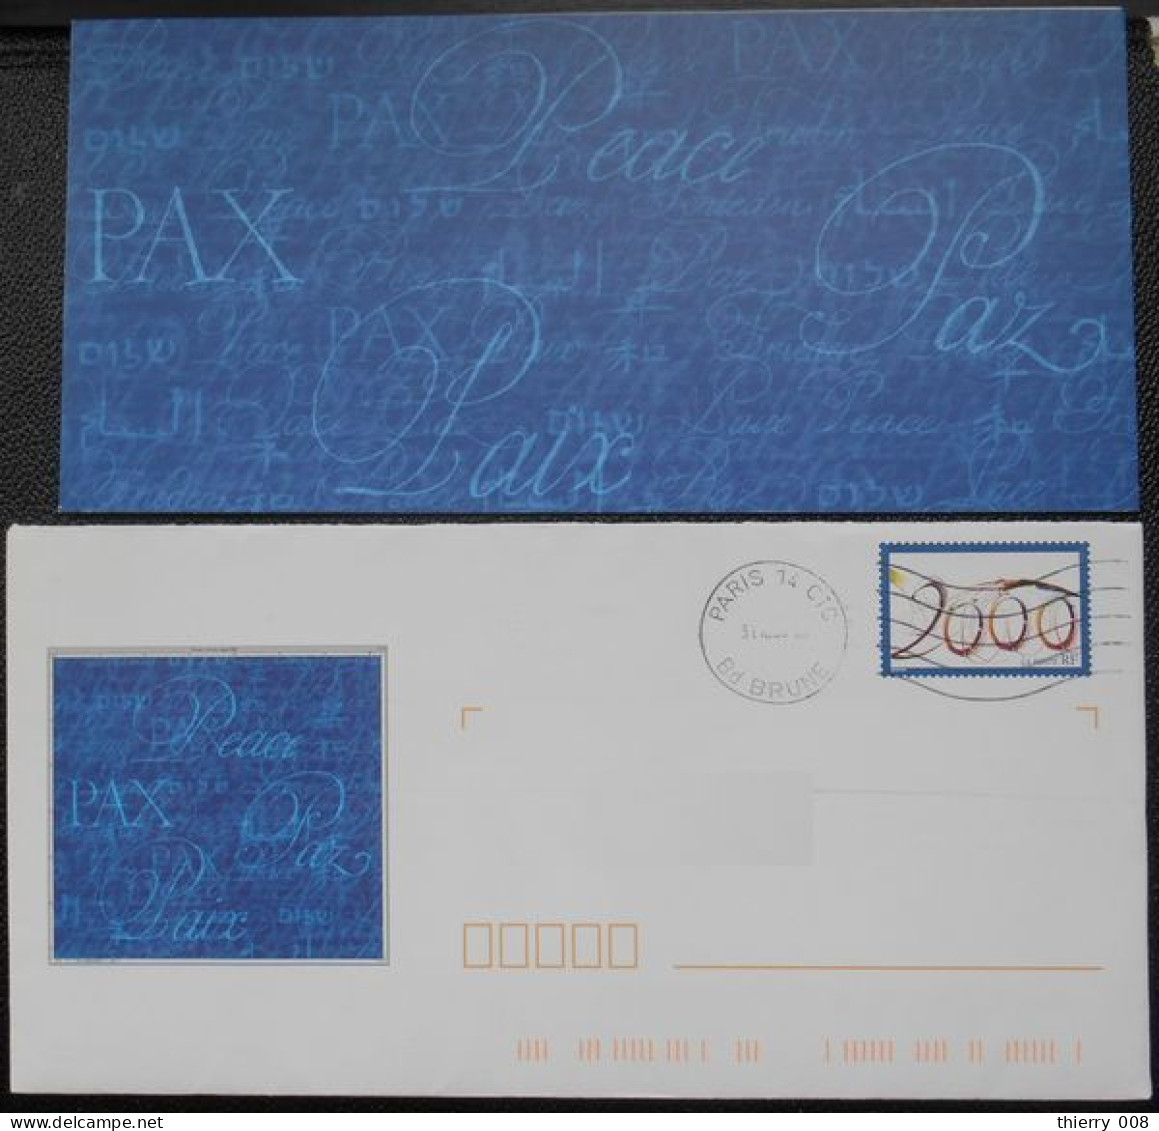 Enveloppe PAP De Service La Poste Timbre An 2000  Oblitéré  Avec Son Carton Non écrit - Covers & Documents